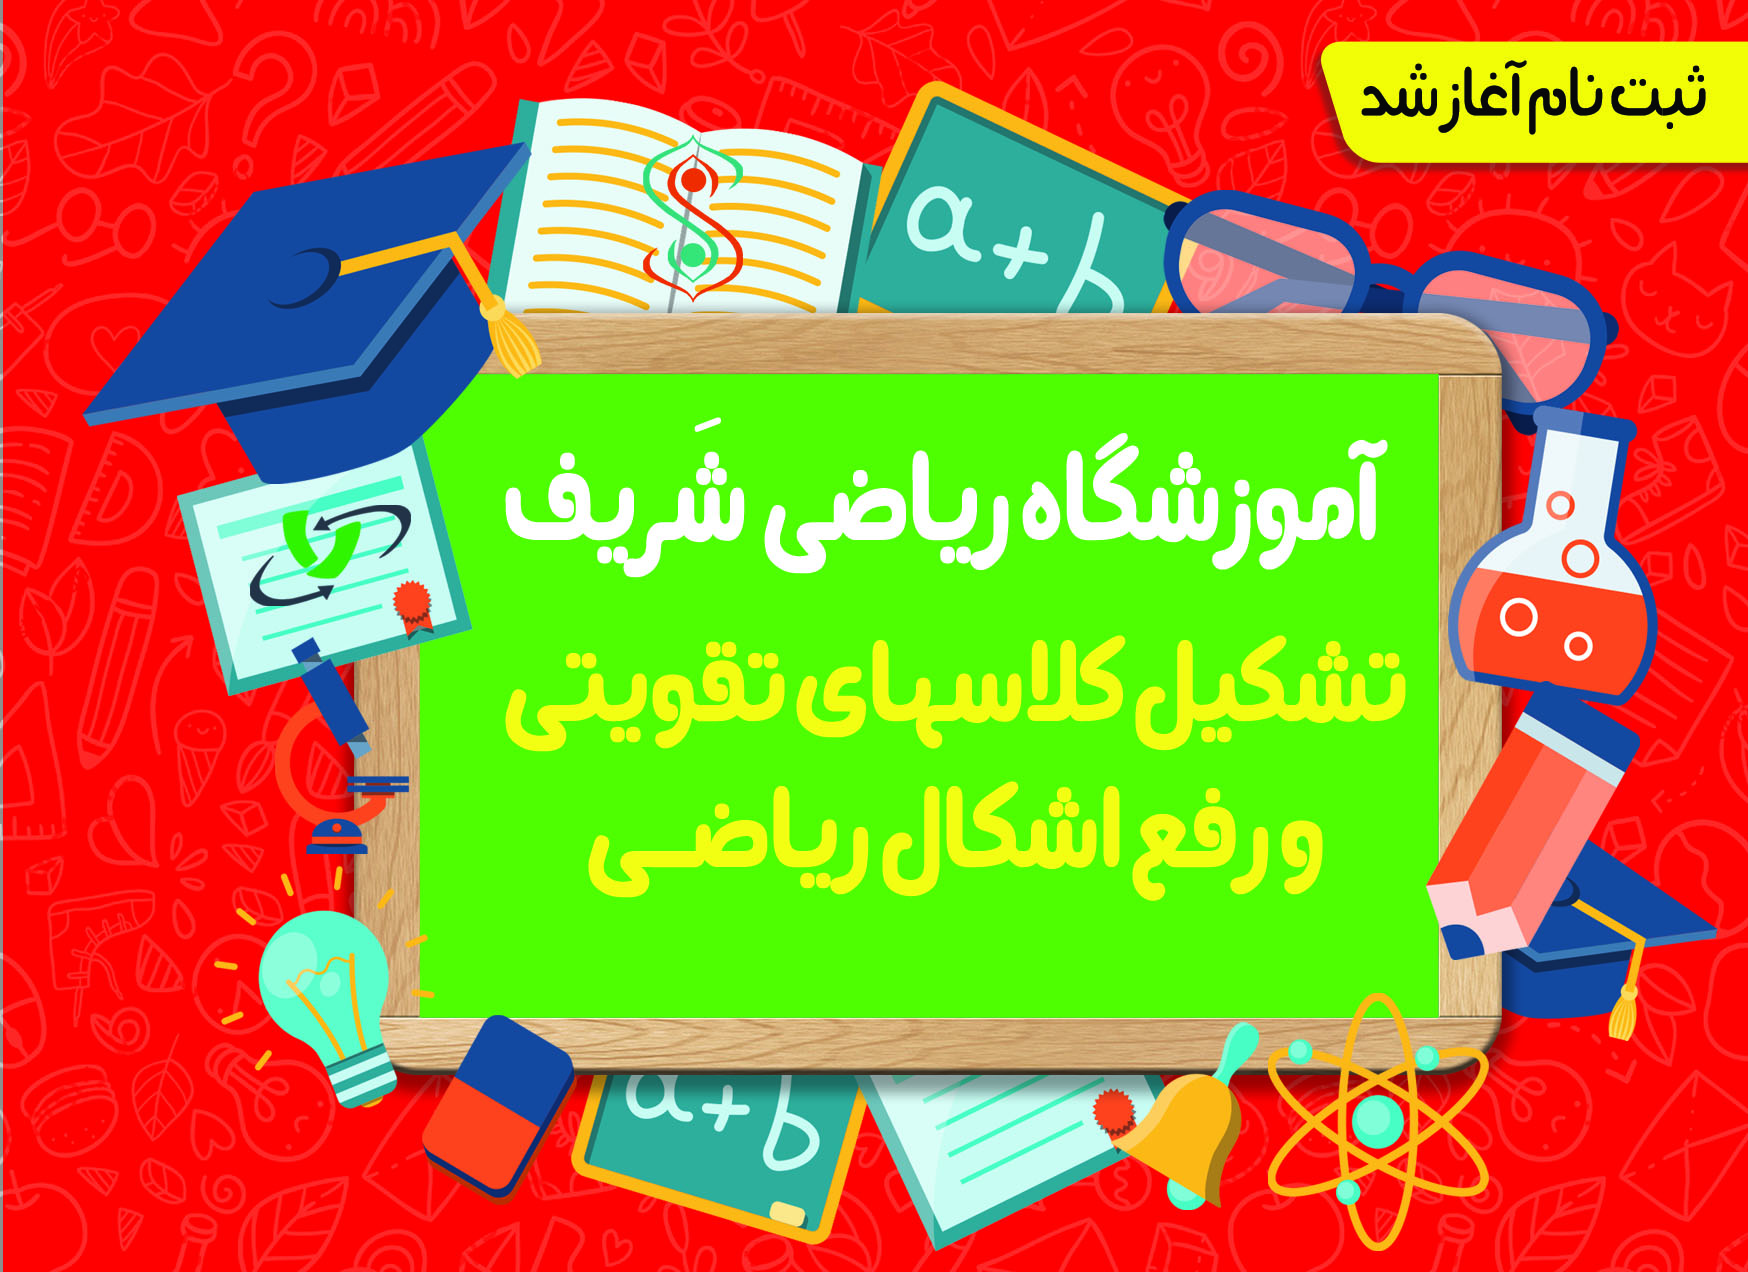 آموزشگاه ریاضی غرب تهران